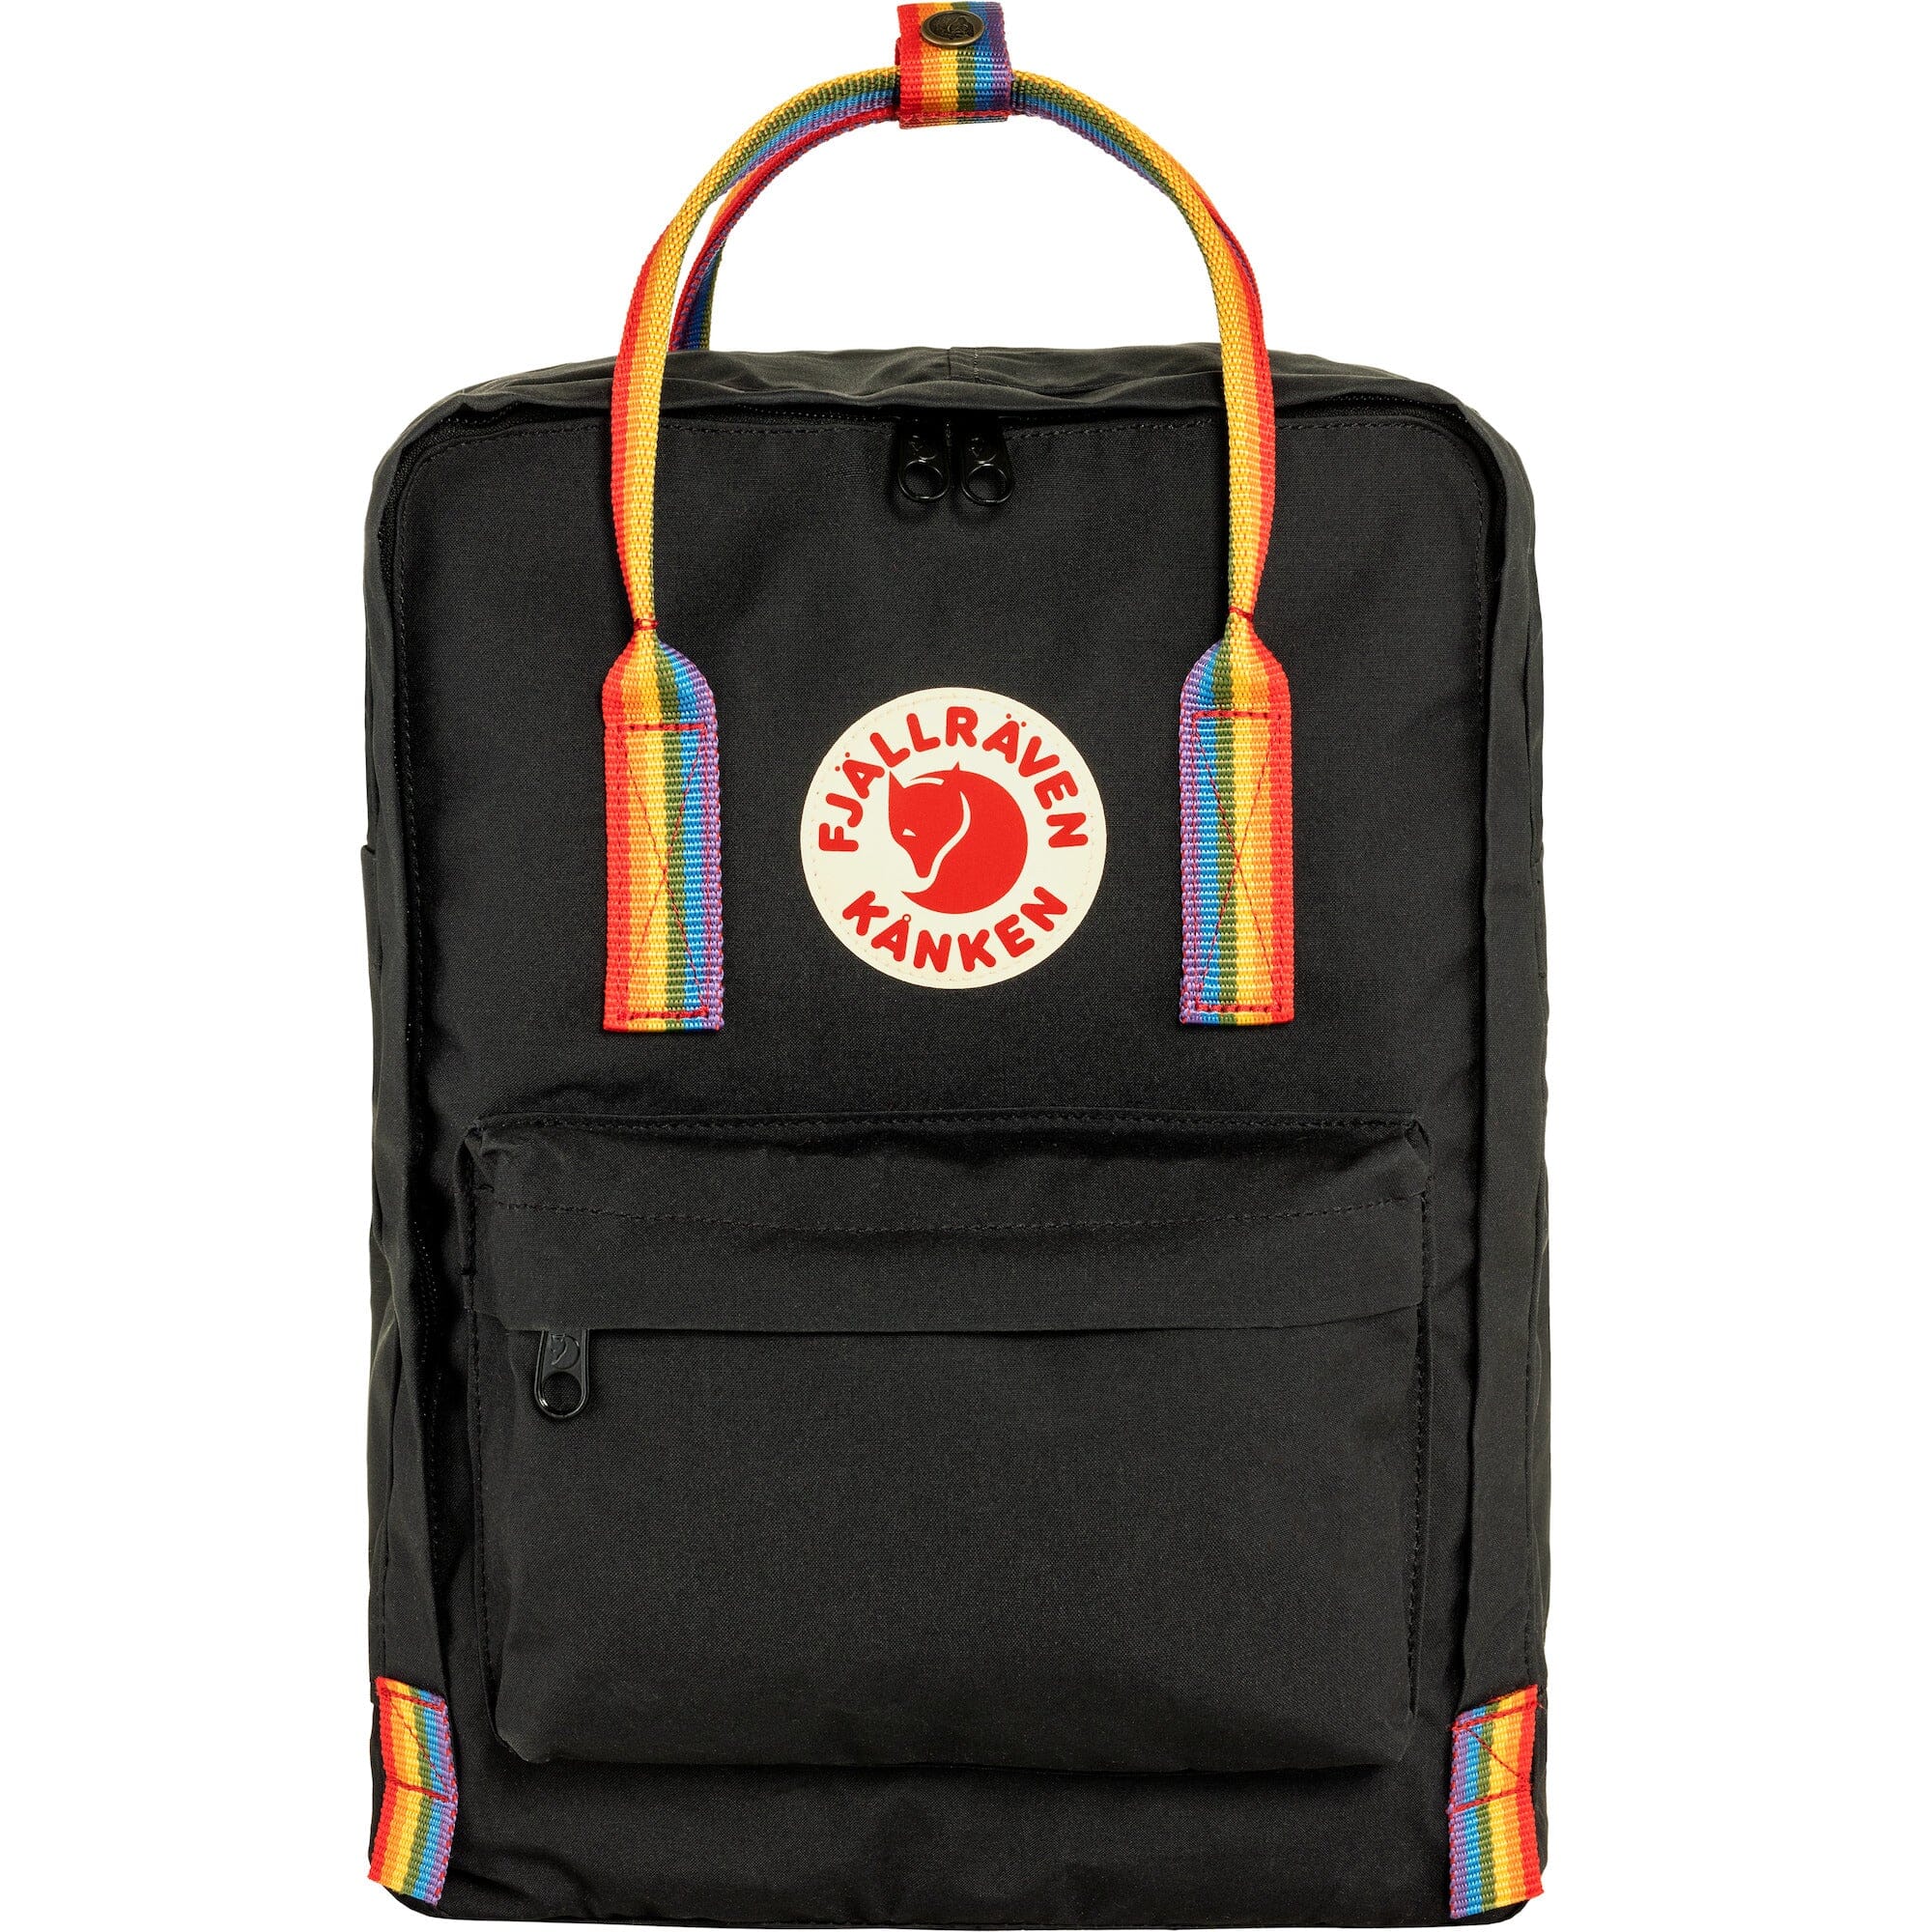 Fjallraven Kanken Rainbow Backpack Black/Rainbow Pattern 